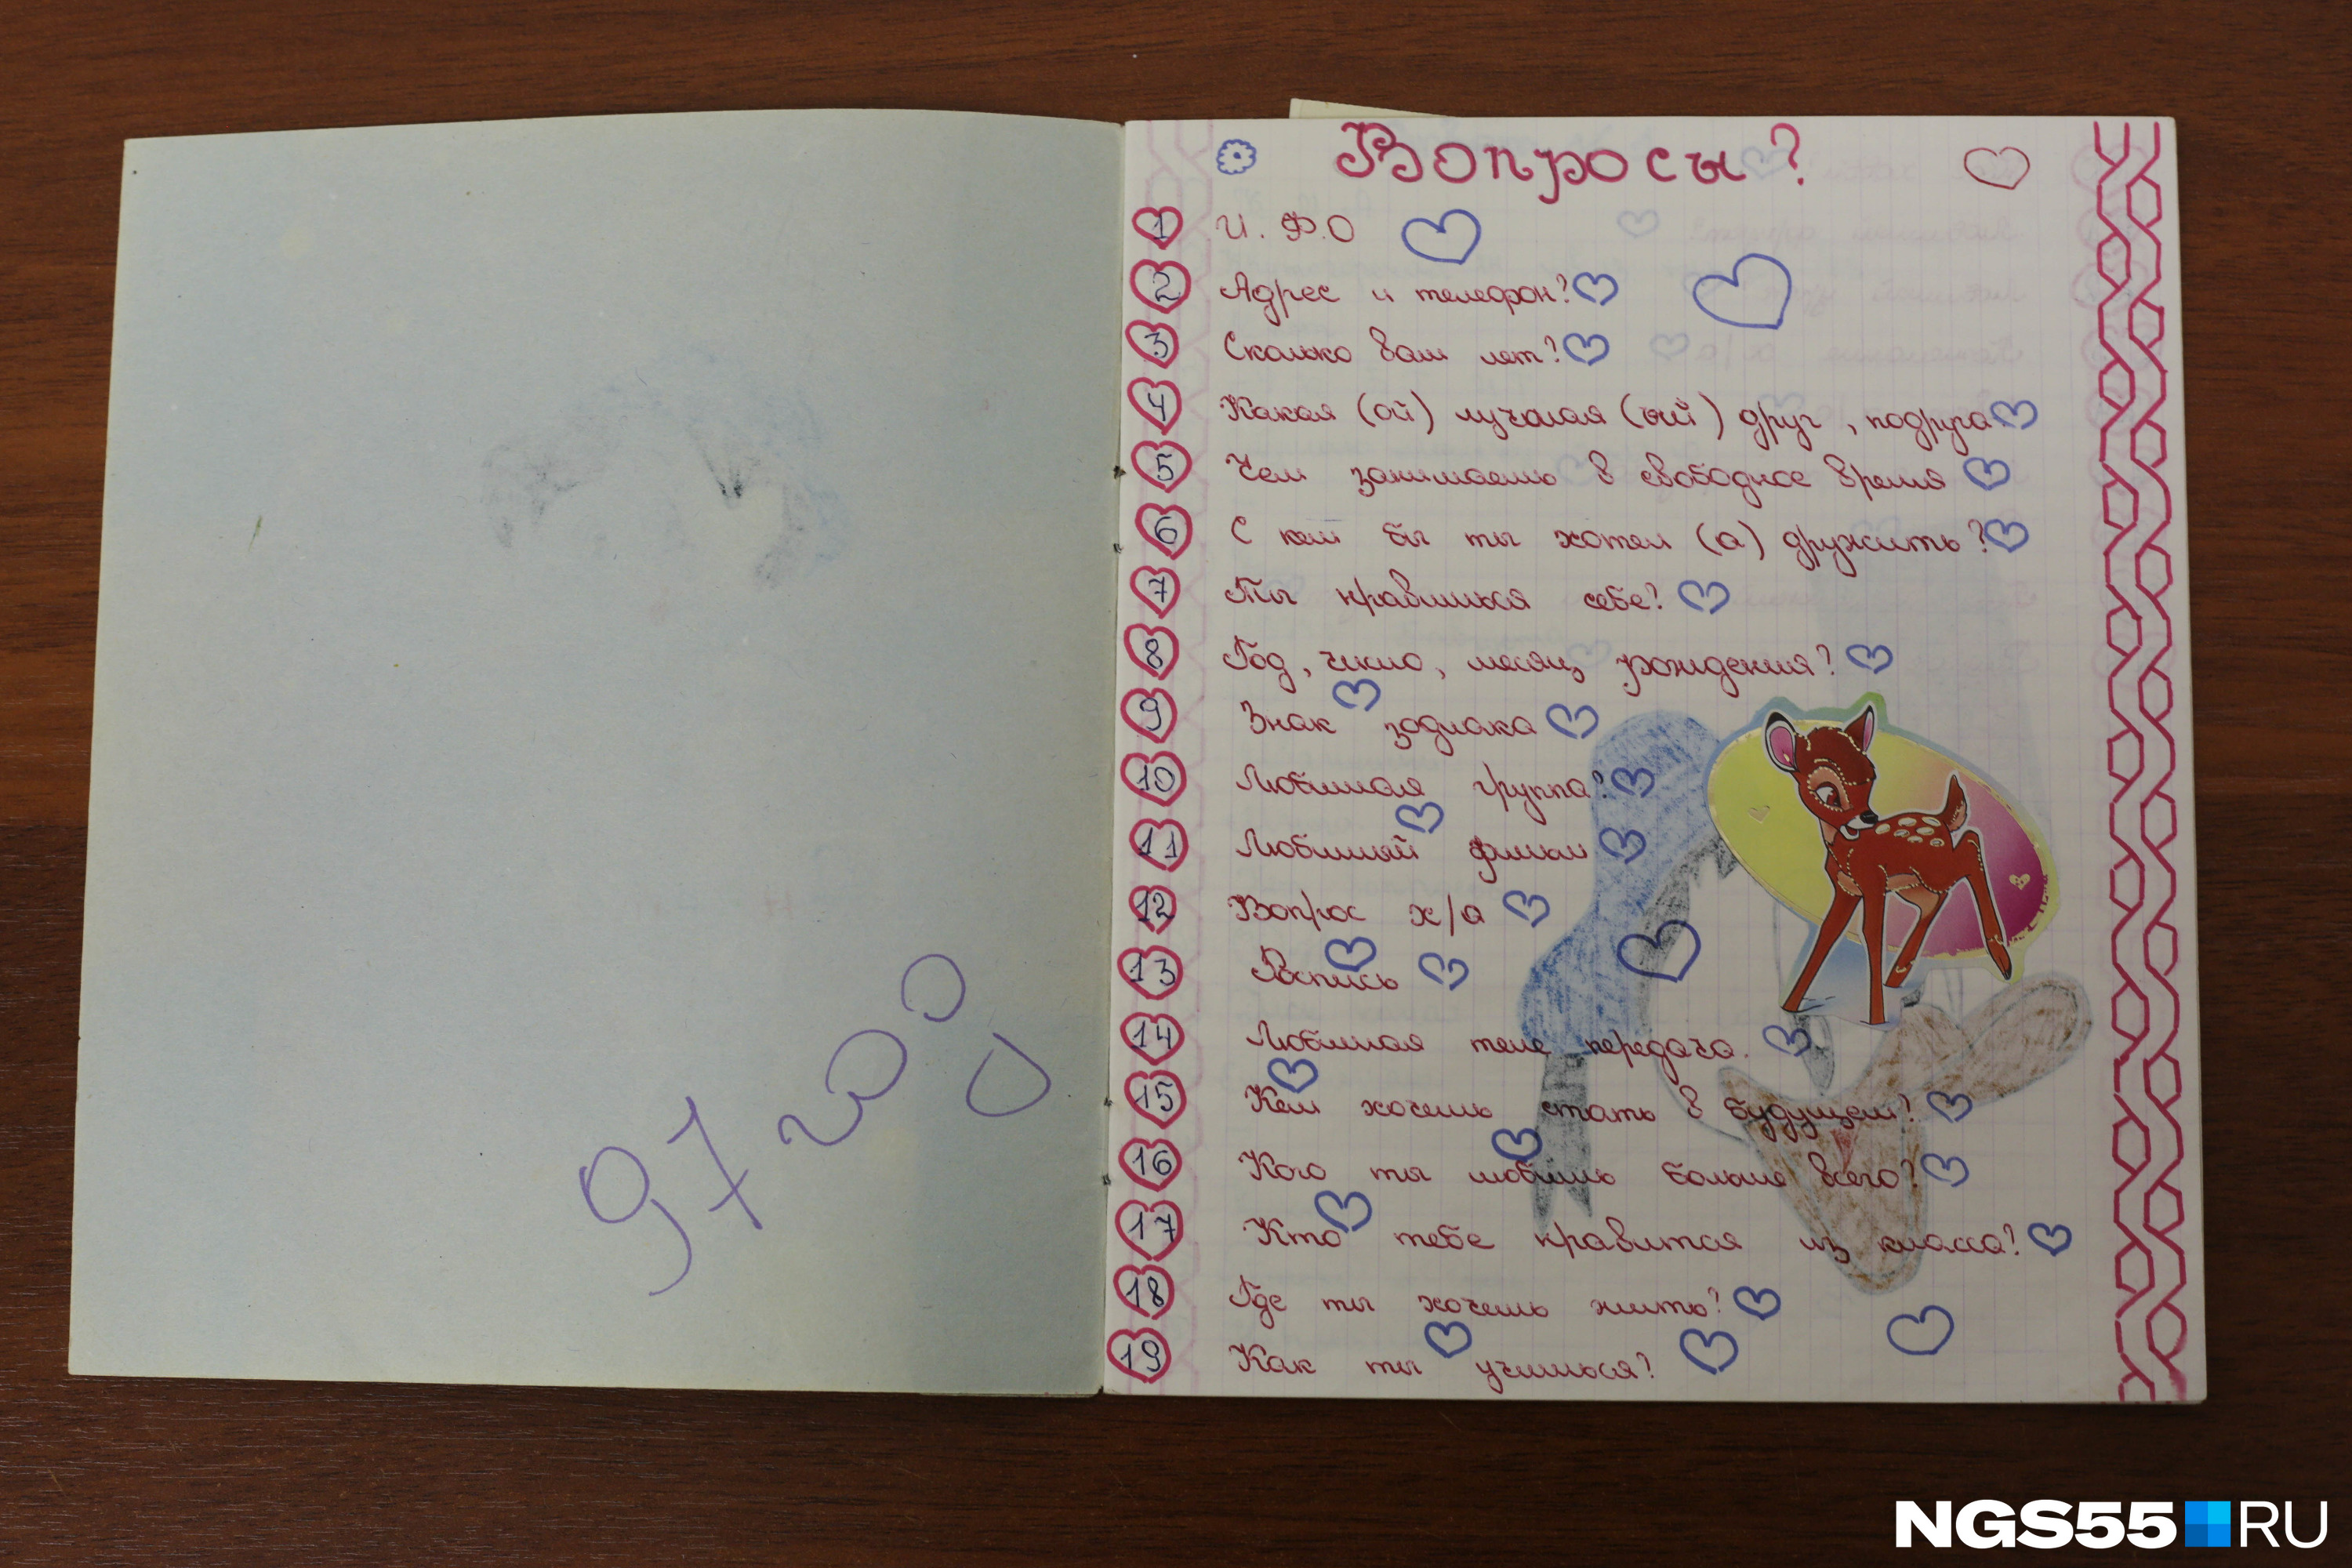 Личный дневник для девочек анкета друзей блокнот